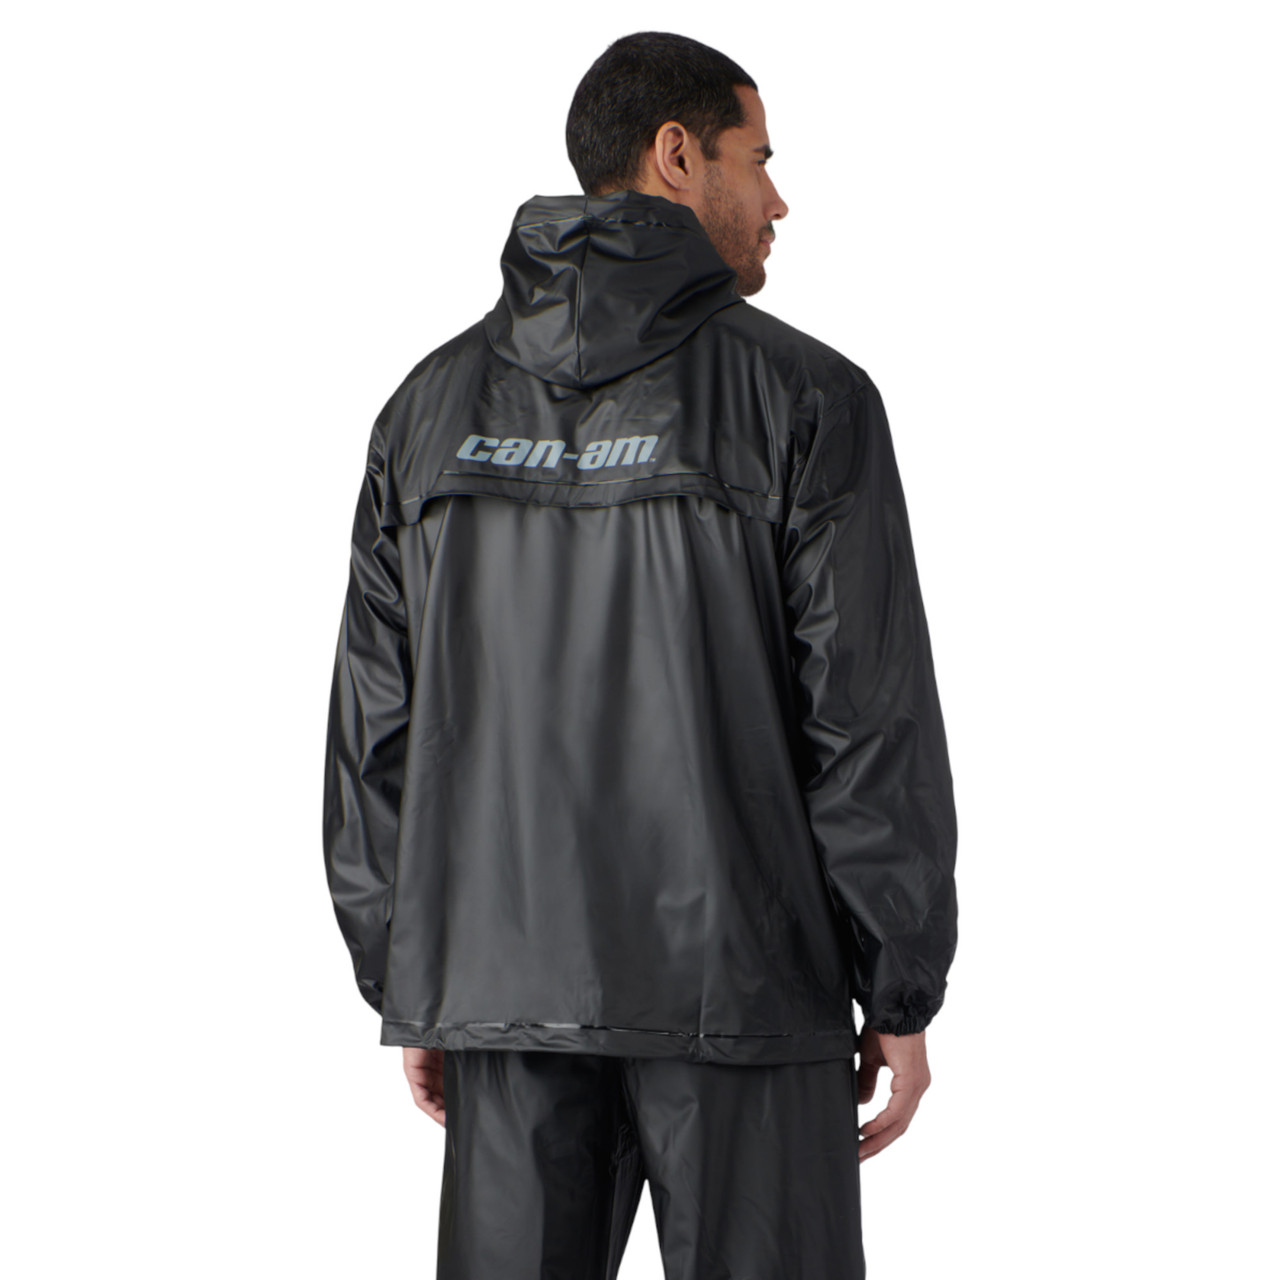 Can-Am New OEM Men's Large Matte Black Mud Jacket, 2866760993